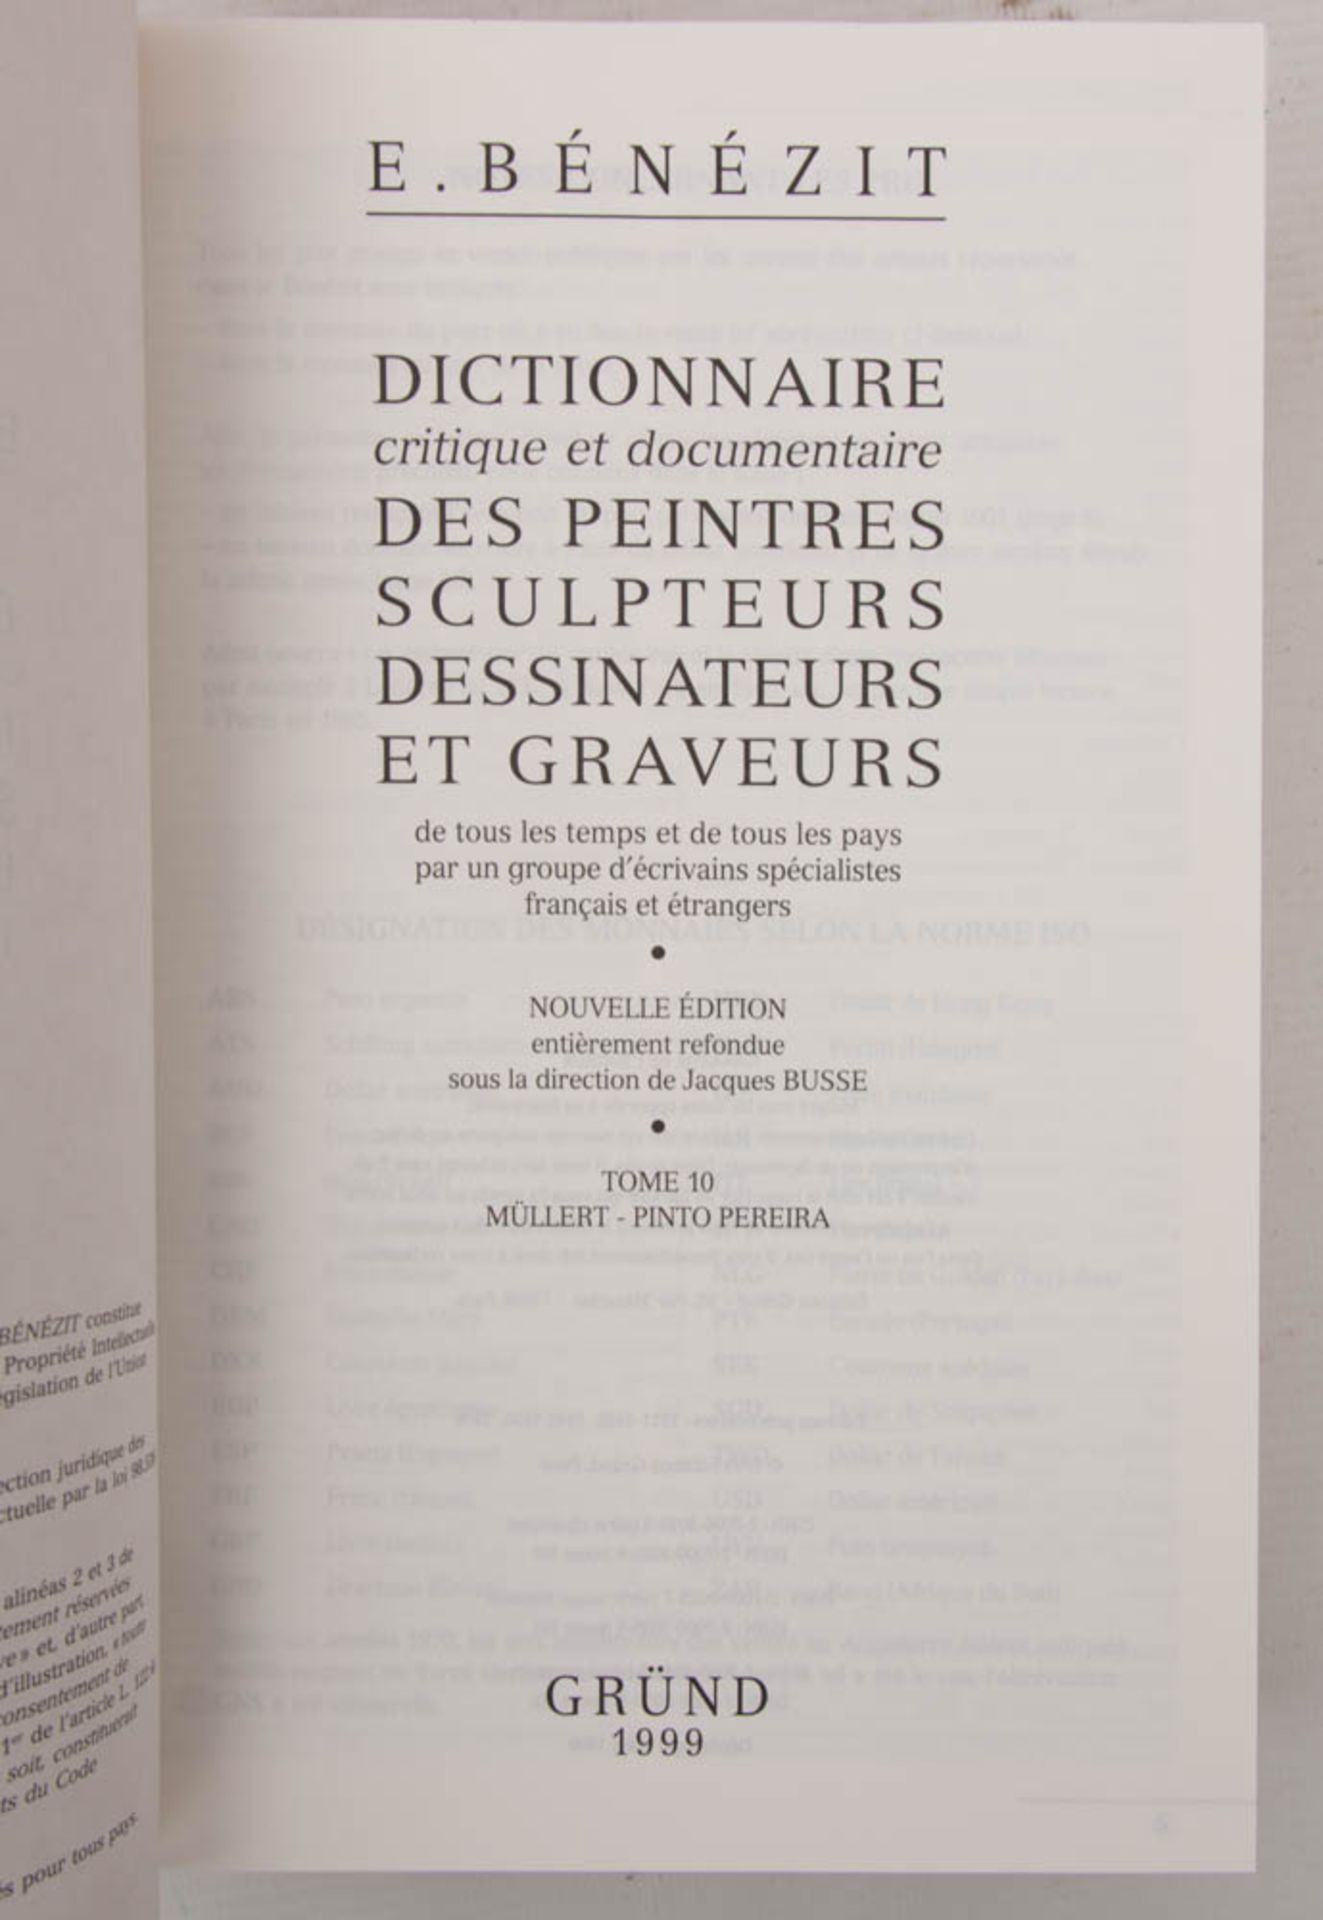 KÜNSTLERLEXIKON E. BENEZIT, Dictionnaire des Peintres Sculpteurs Dessinateurs et Graveurs, Auflage - Bild 5 aus 5